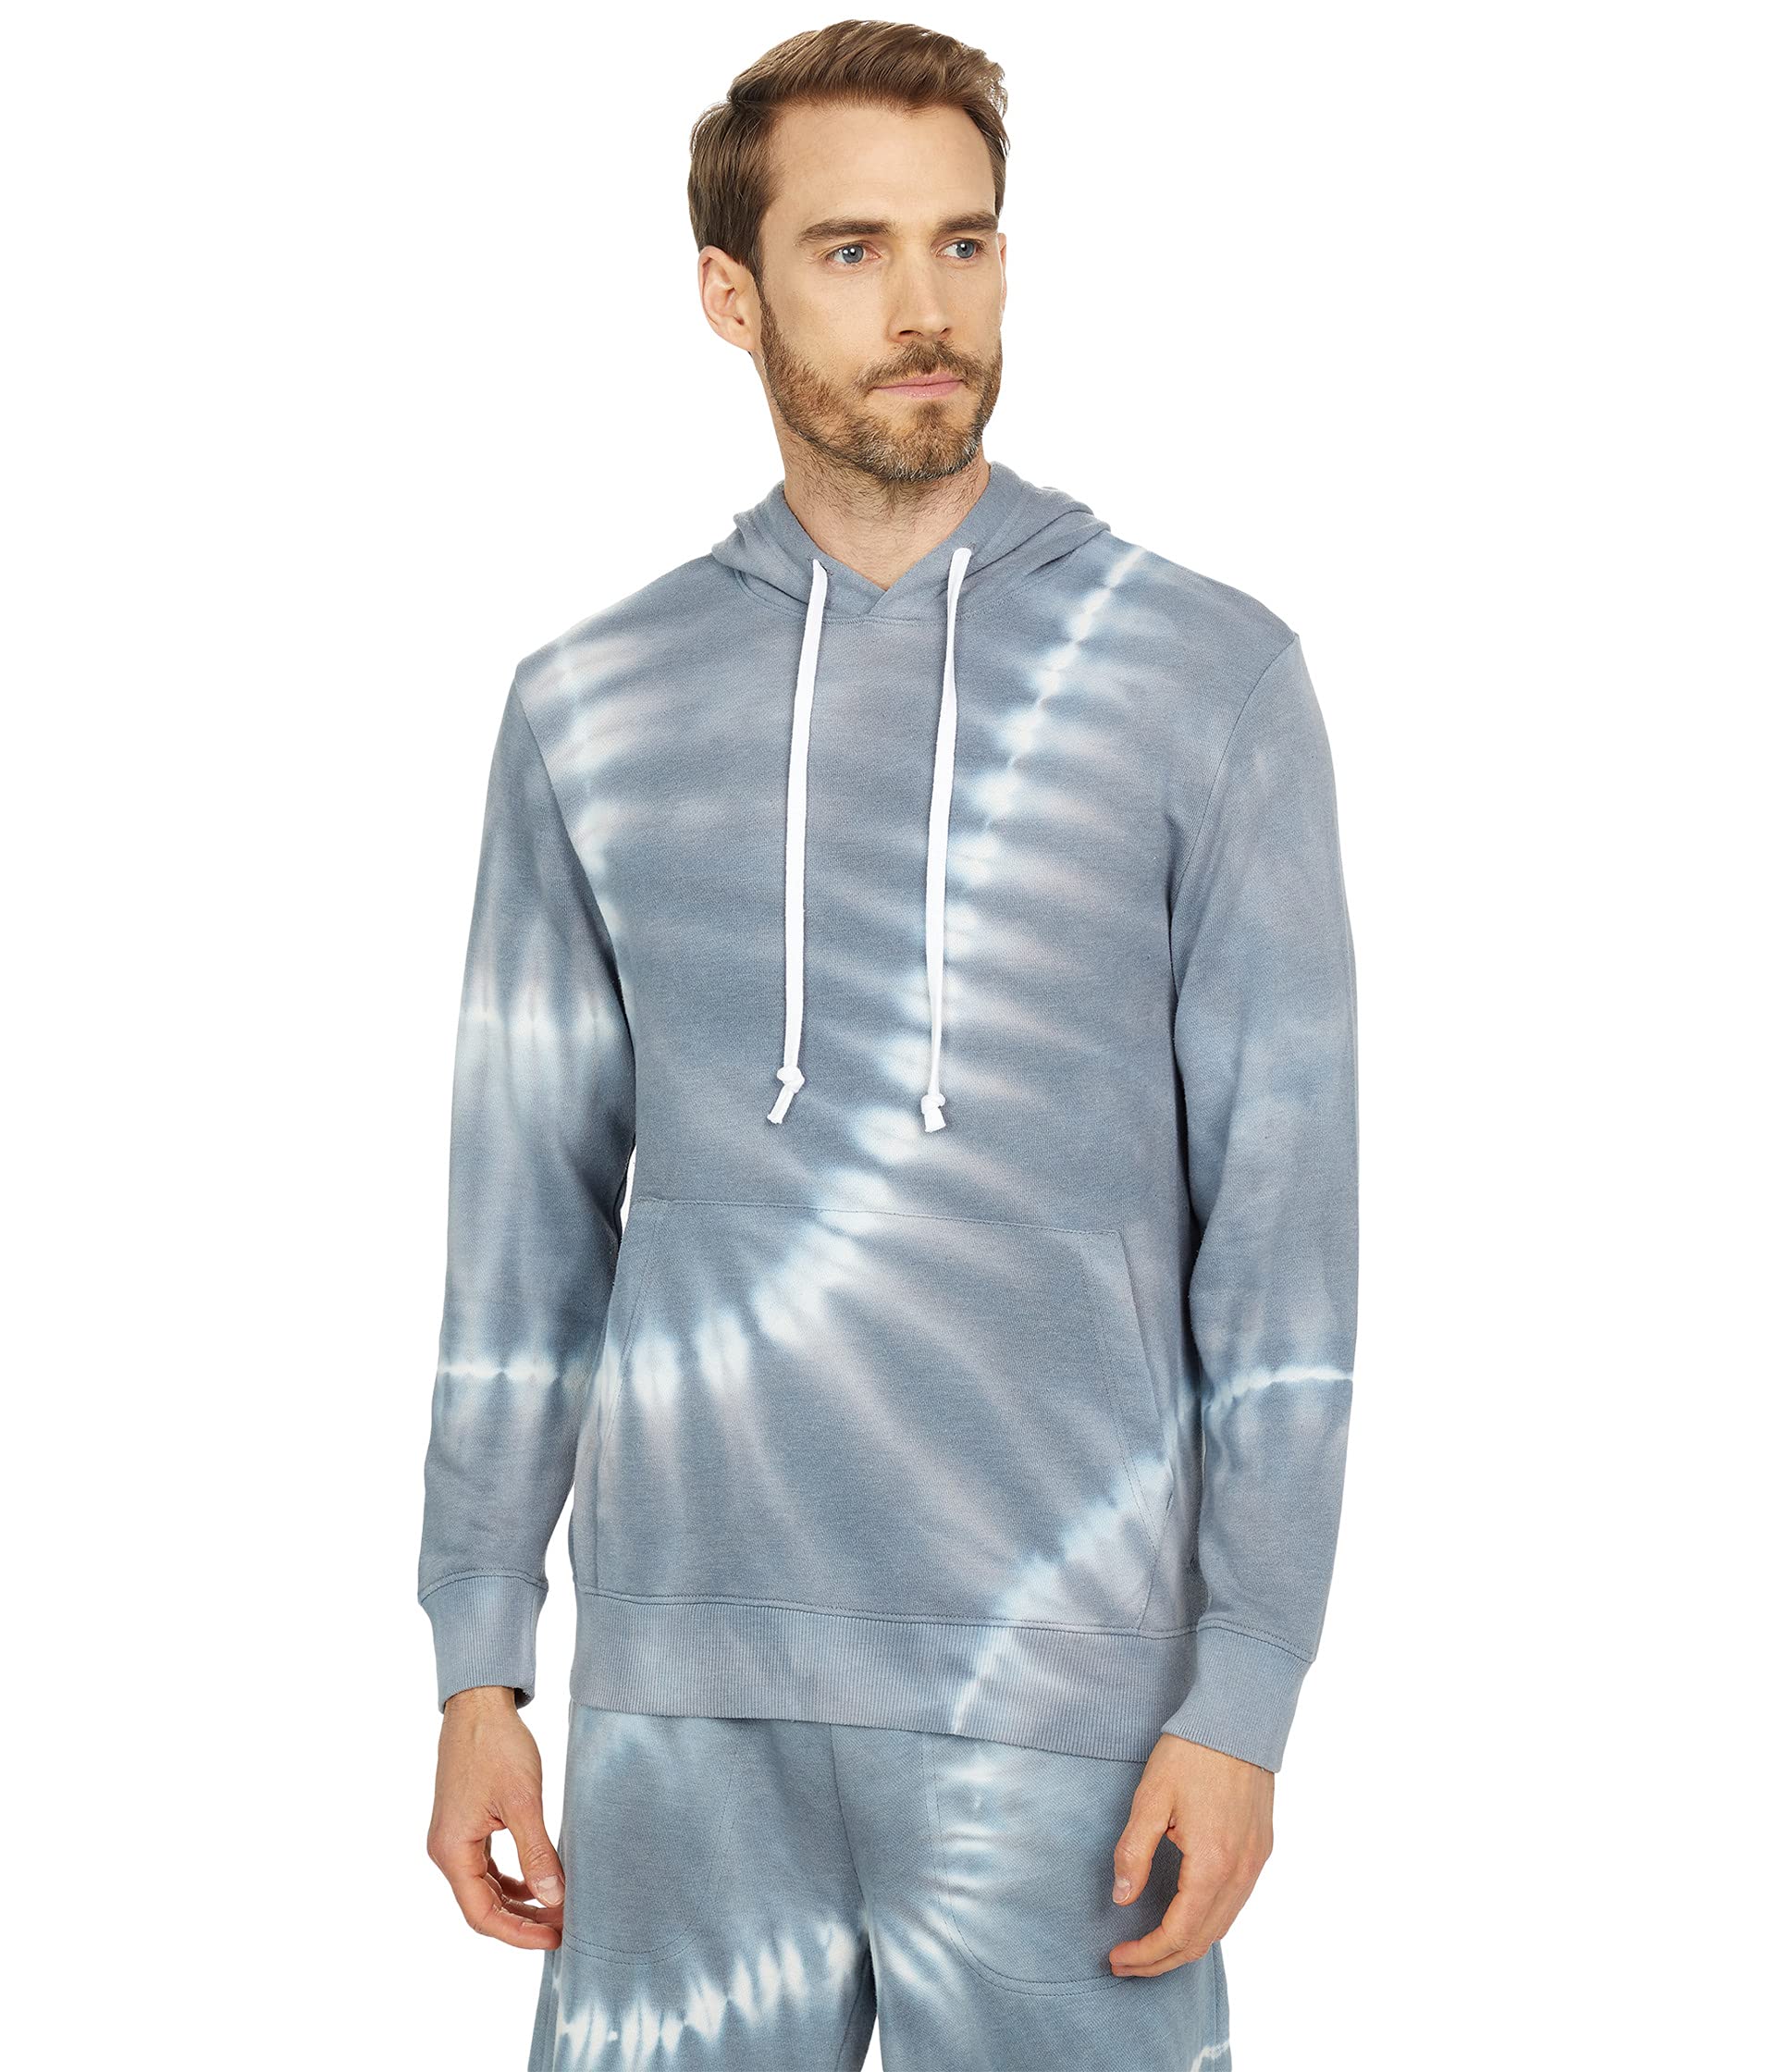 Худи Alternative, Asher Pullover Hoodie худи alternative asher pullover hoodie цвет blue linear tie dye